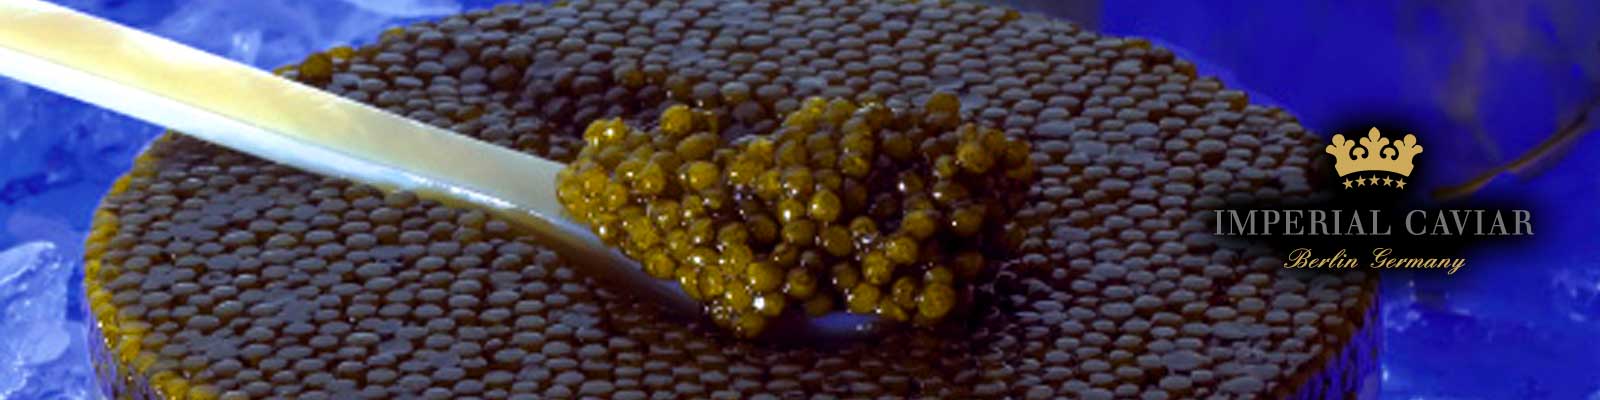 Caviar d`esturgeon selection imperiale Les differents types de produits frais importes des meilleurs producteurs de caviar sont minutieusement controles par notre personnel competent avant d`etre emballes en termes de temperature, d`apparence, d`odeur, de consistance et de gout et classes selon les plus fines differences de gout et de nuances de couleur. De cette facon, nous creons la selection preferee de chaque gourmet.